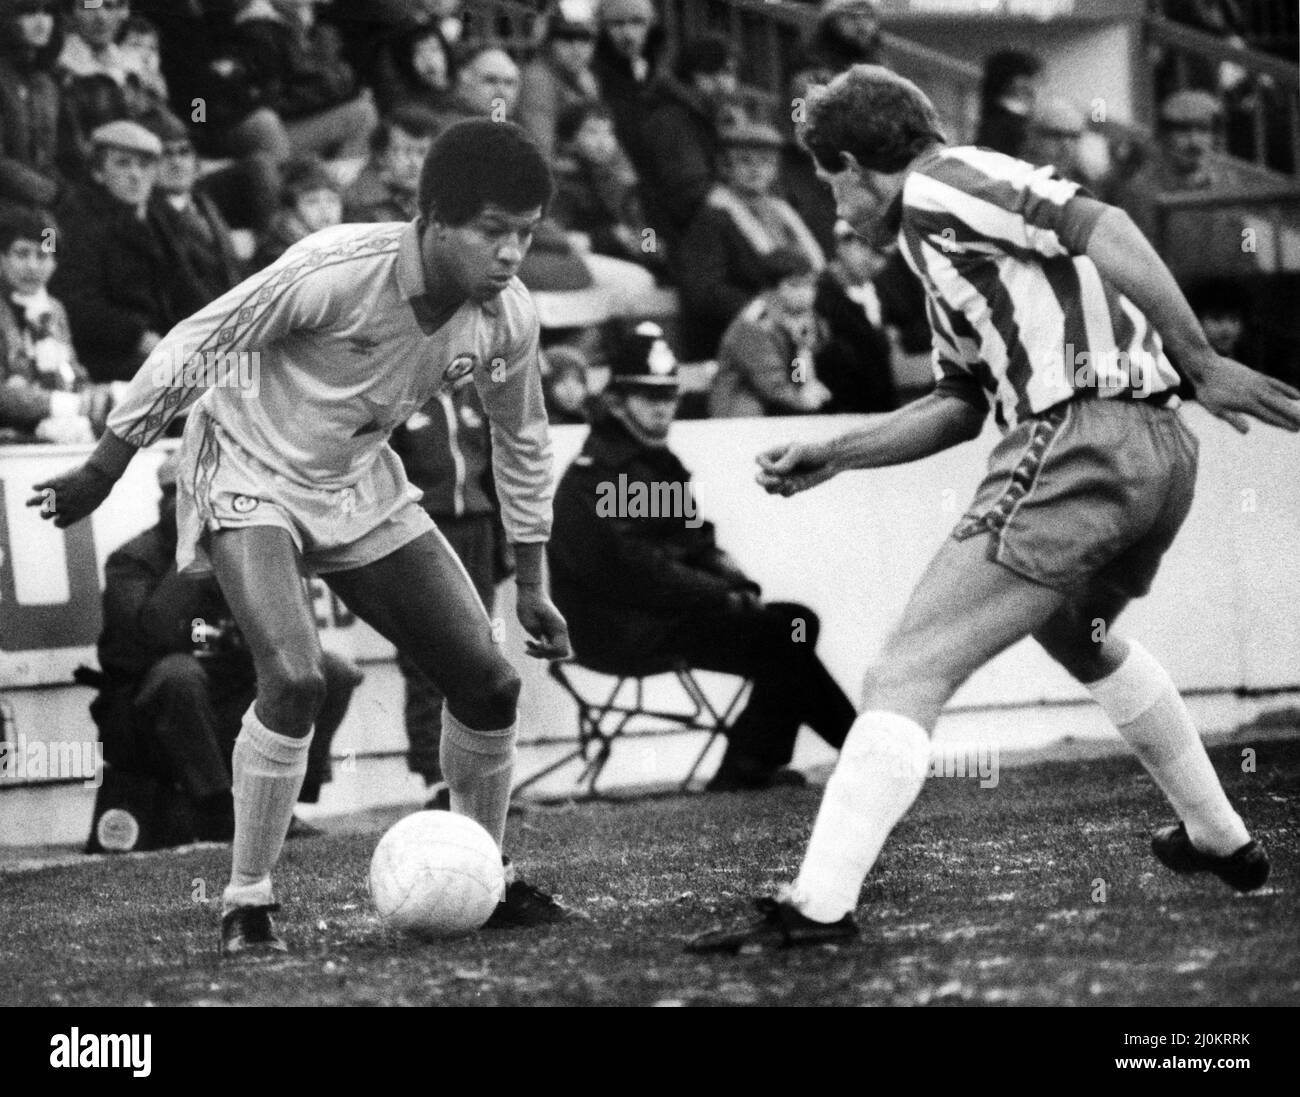 Howard Gayle de Newcastle est sur le ballon lorsqu'il se présente contre Ian Bailey de Sheffield Wednesday. Sheffield Wednesday contre Newcastle United, League Division Two, note finale 1-1. 18th décembre 1982. Banque D'Images